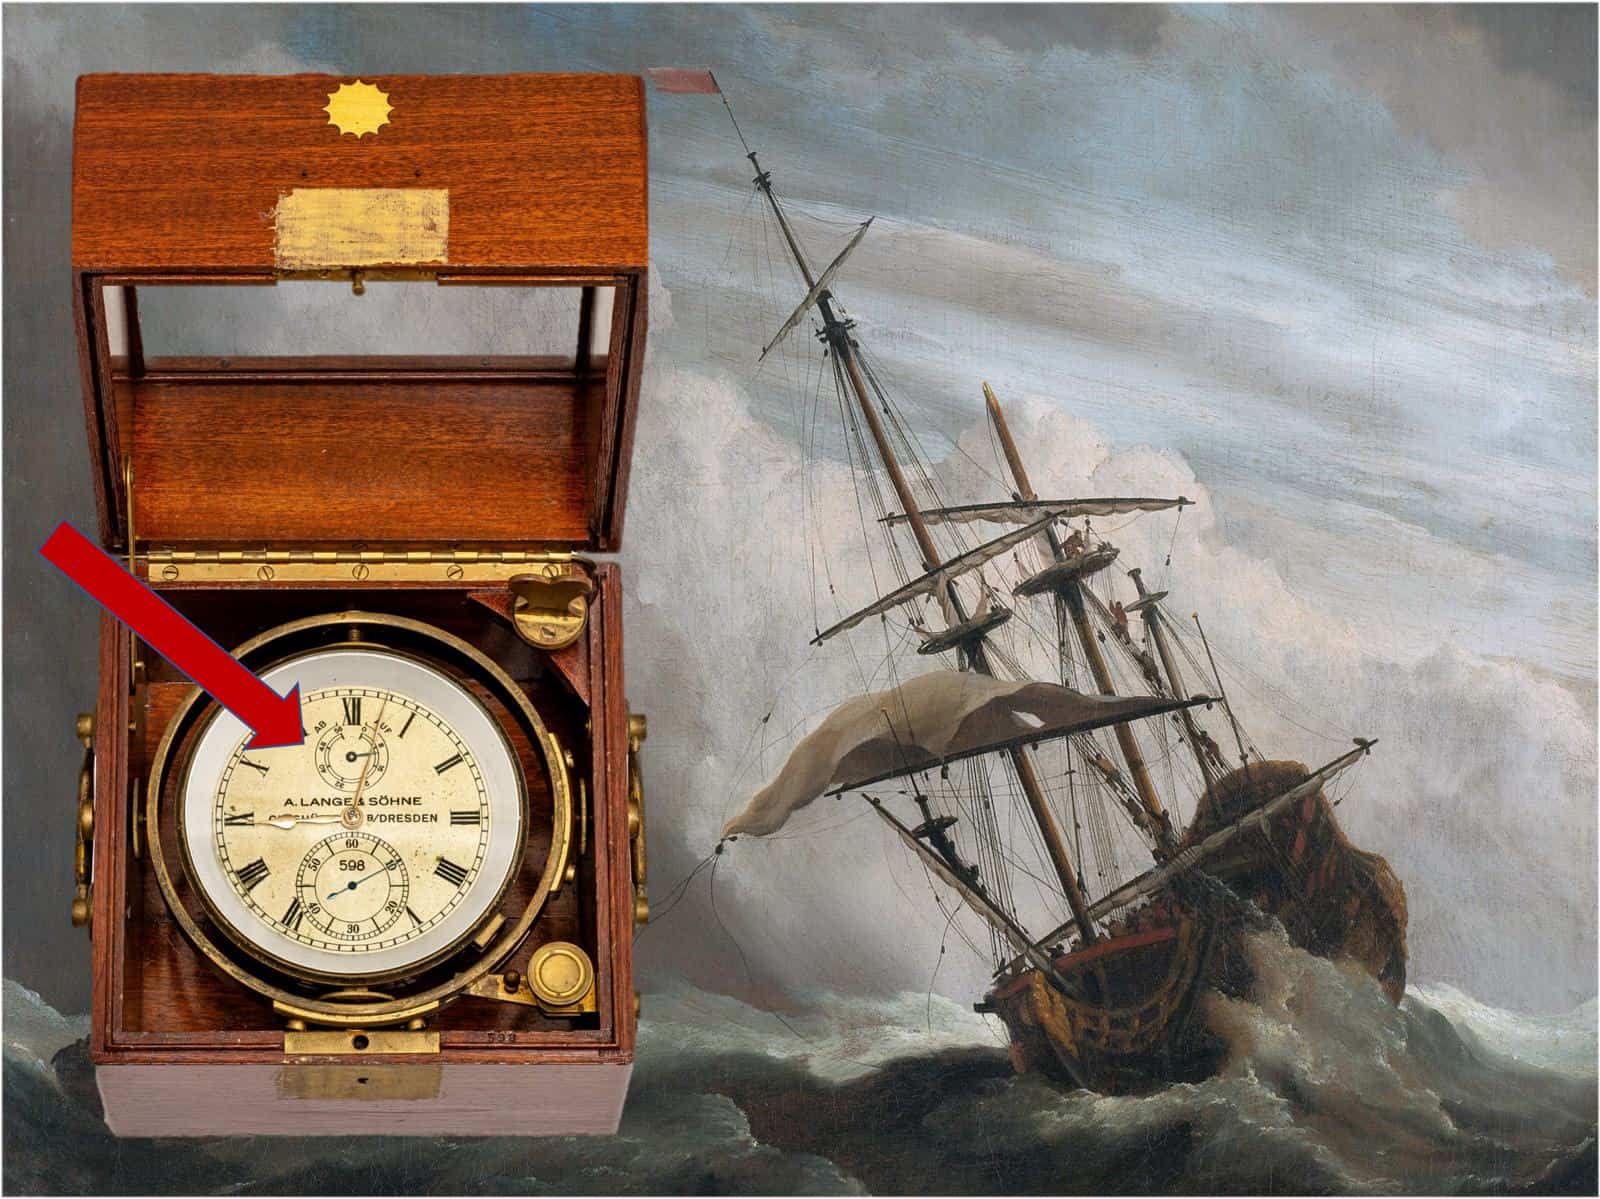 Auf- und Abwerk beim Marinechronometer von A. Lange & Söhne